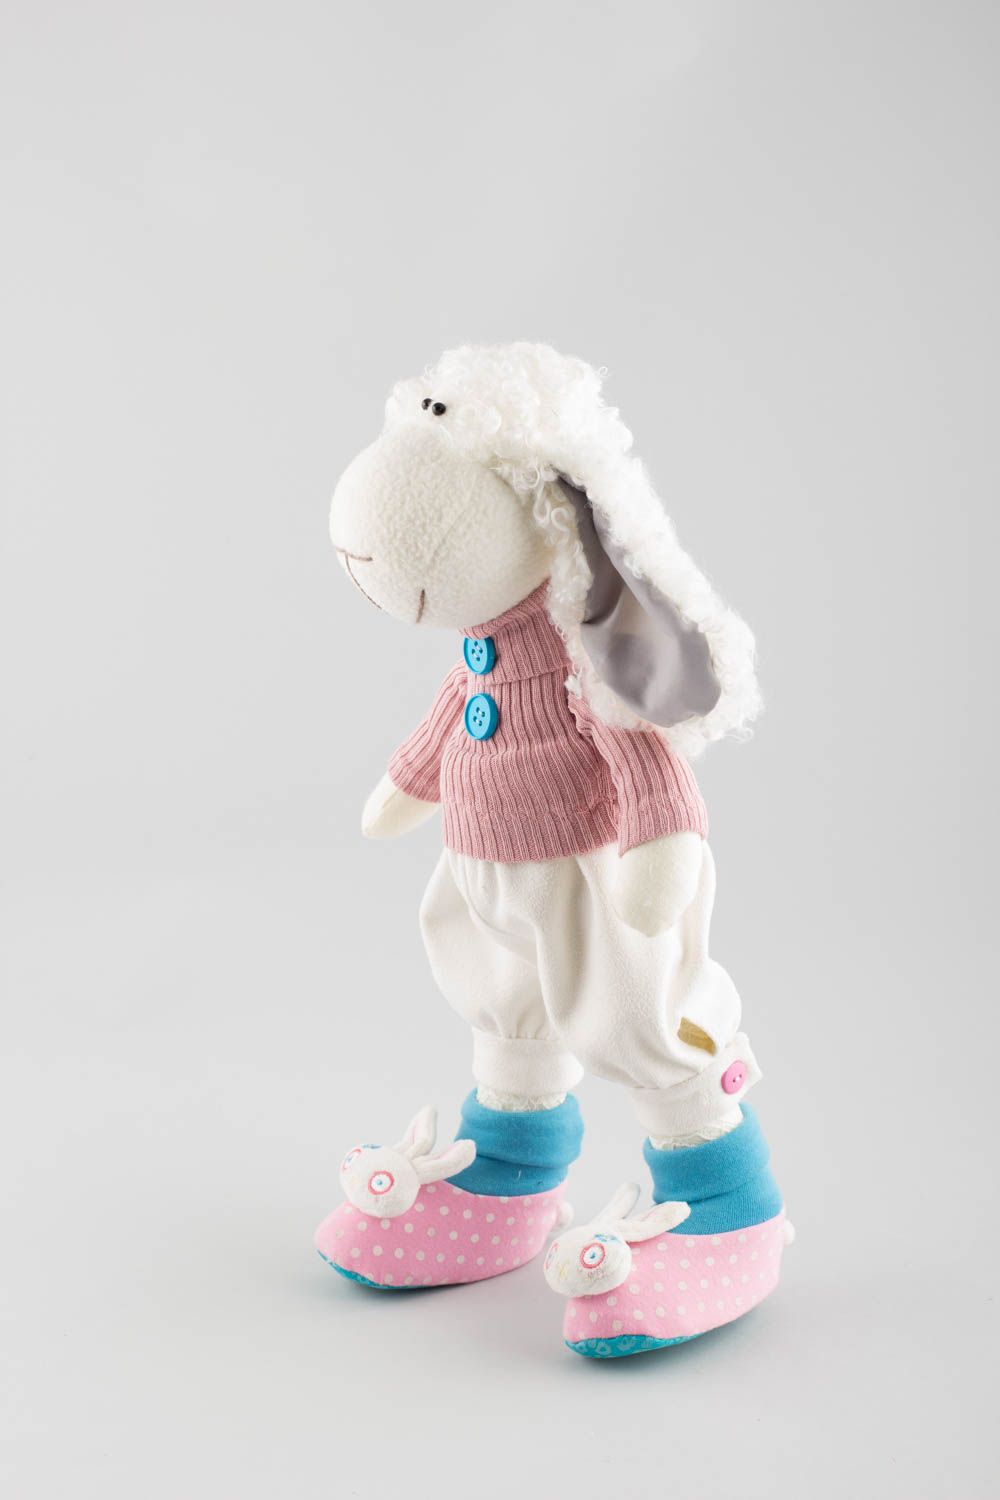 Textil Kuscheltier Schaf in rosa Kleidung niedlich Spielzeug für Kinder und Deko foto 3